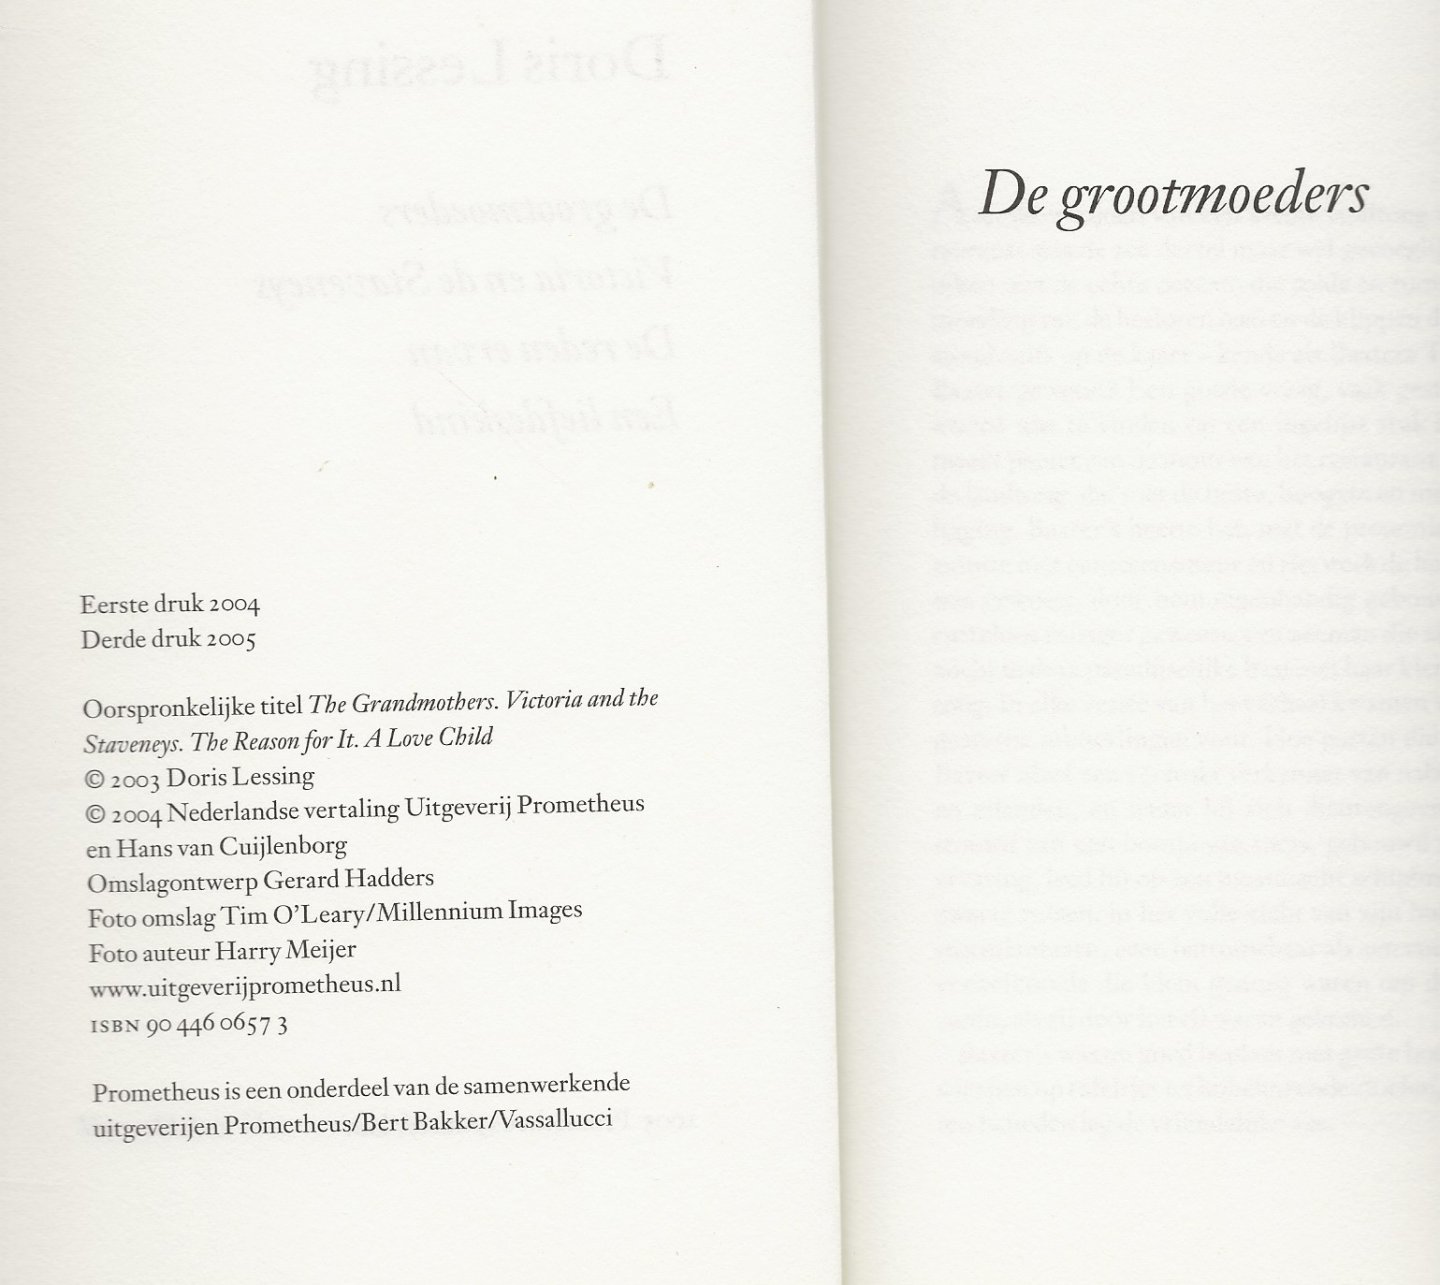 Lessing, Doris Vertaling door Hans  van Cuijlen borg Foto auteur  Harry Meijer - De grootmoeders / bevat de novellen: De grootmoeders . Victoria en de Staveneys . De reden ervan . Een liefdeskind